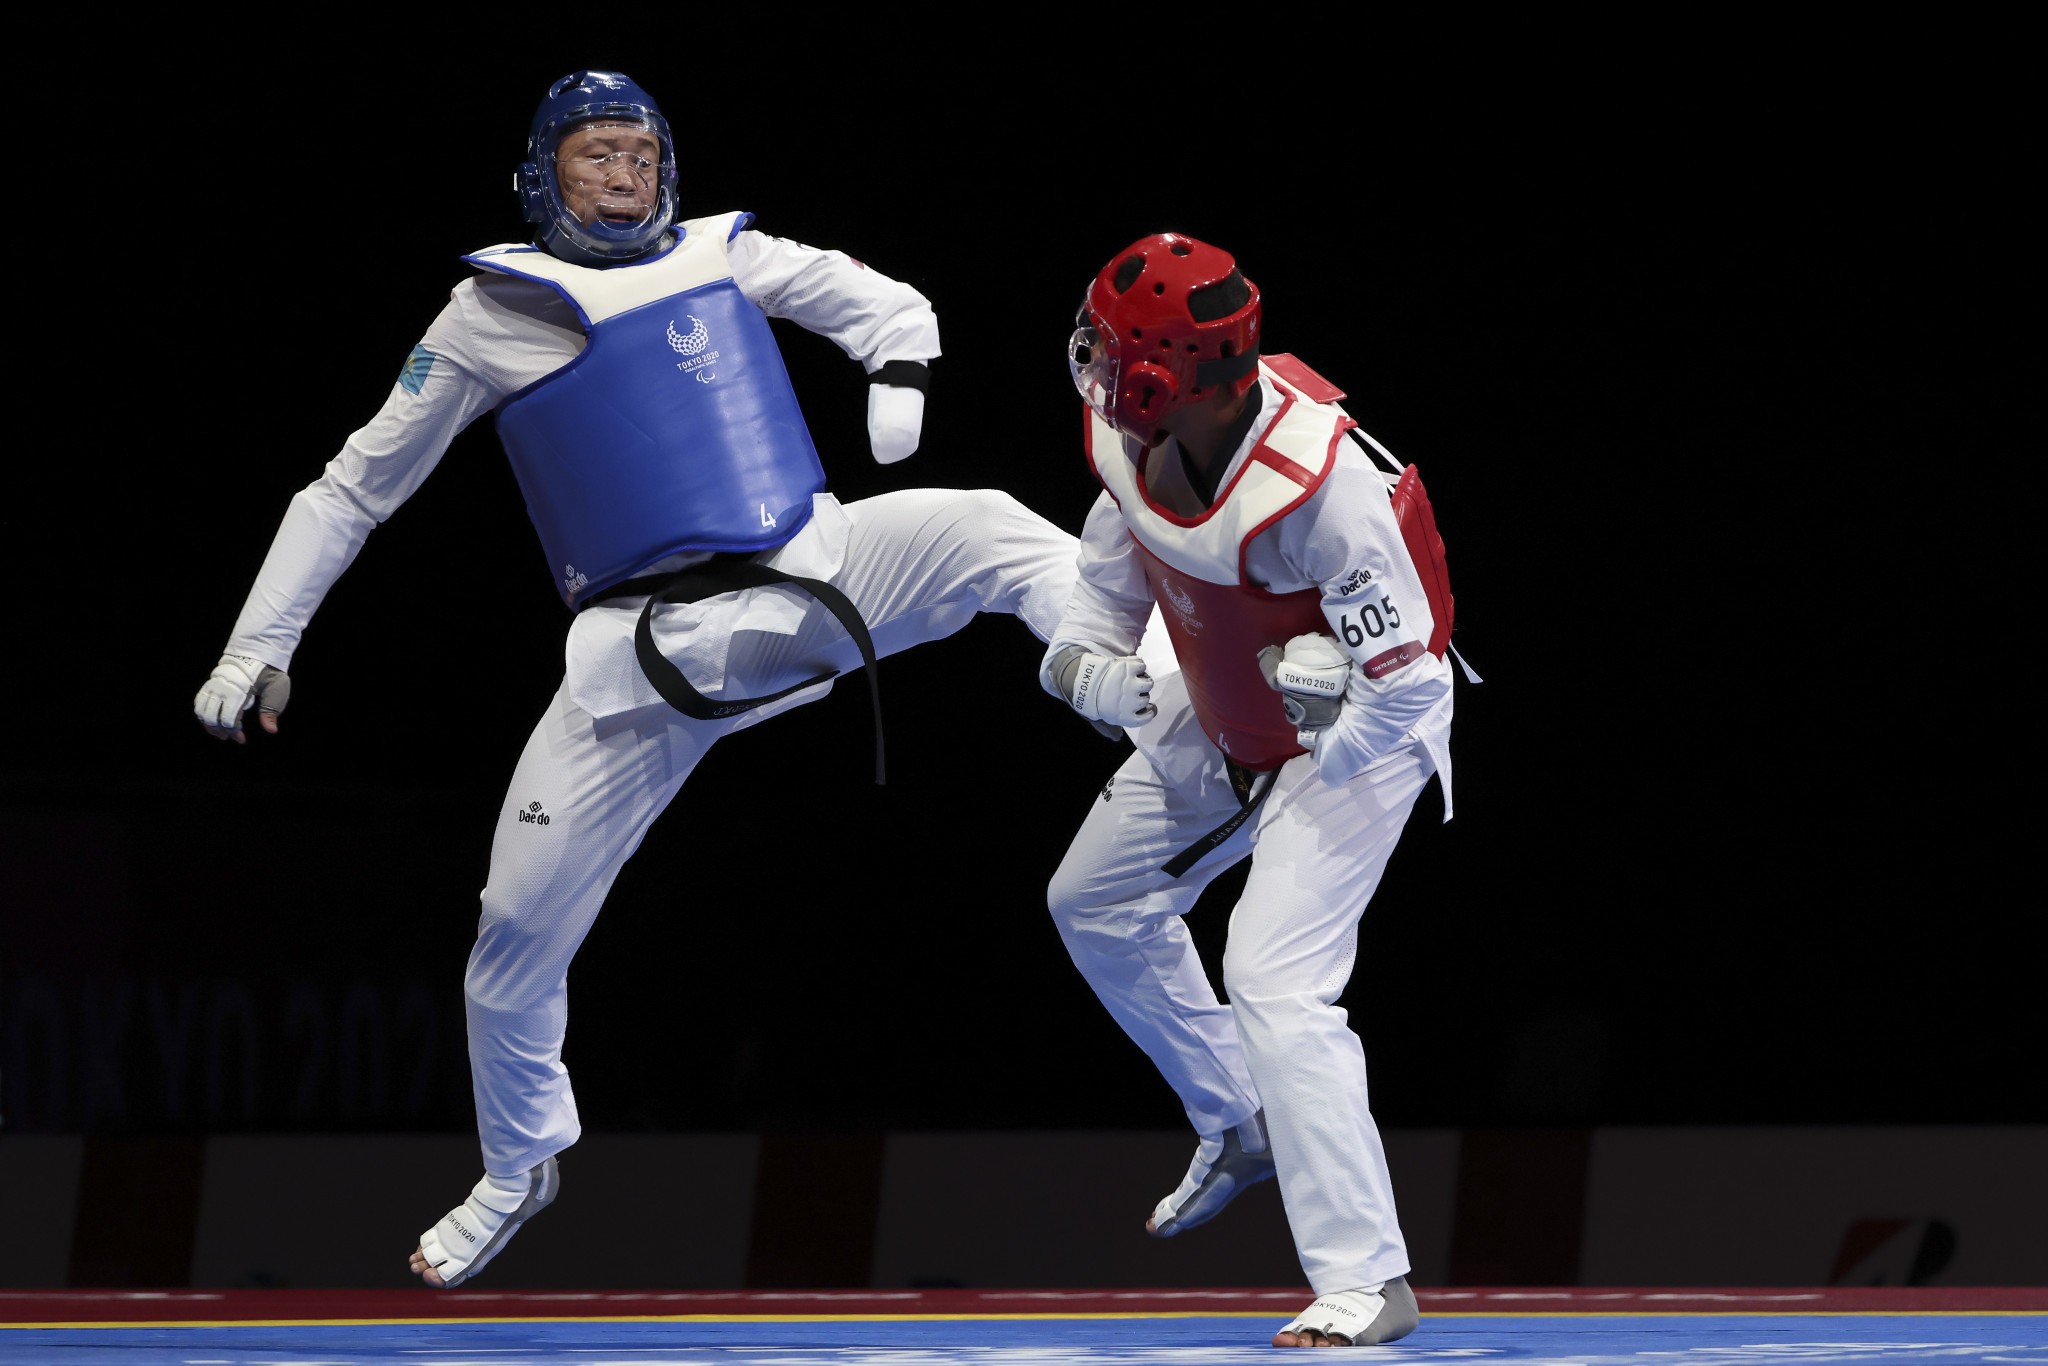 Taekwondo made its Paralympic debut at Tokyo 2020 ©Getty Images